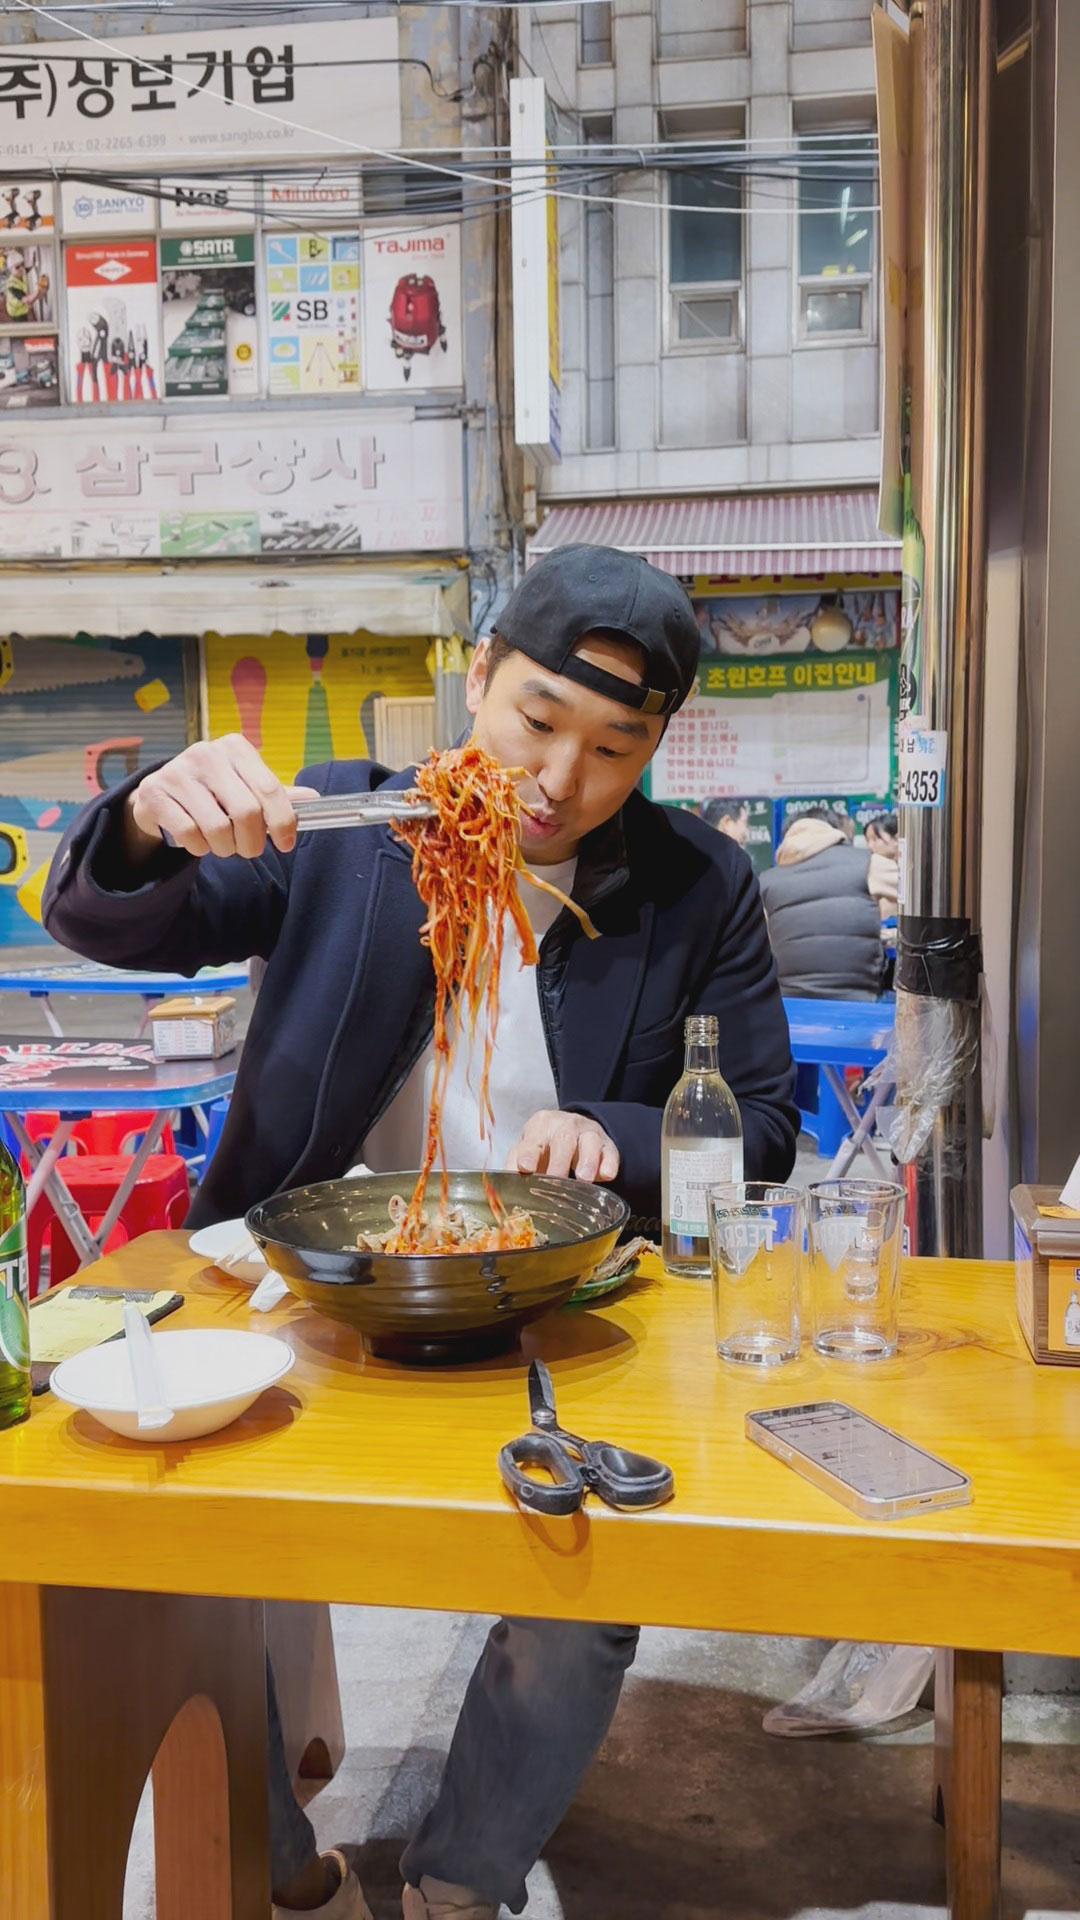 Must Eat Places in Seoul, Korea: Manseon Hof